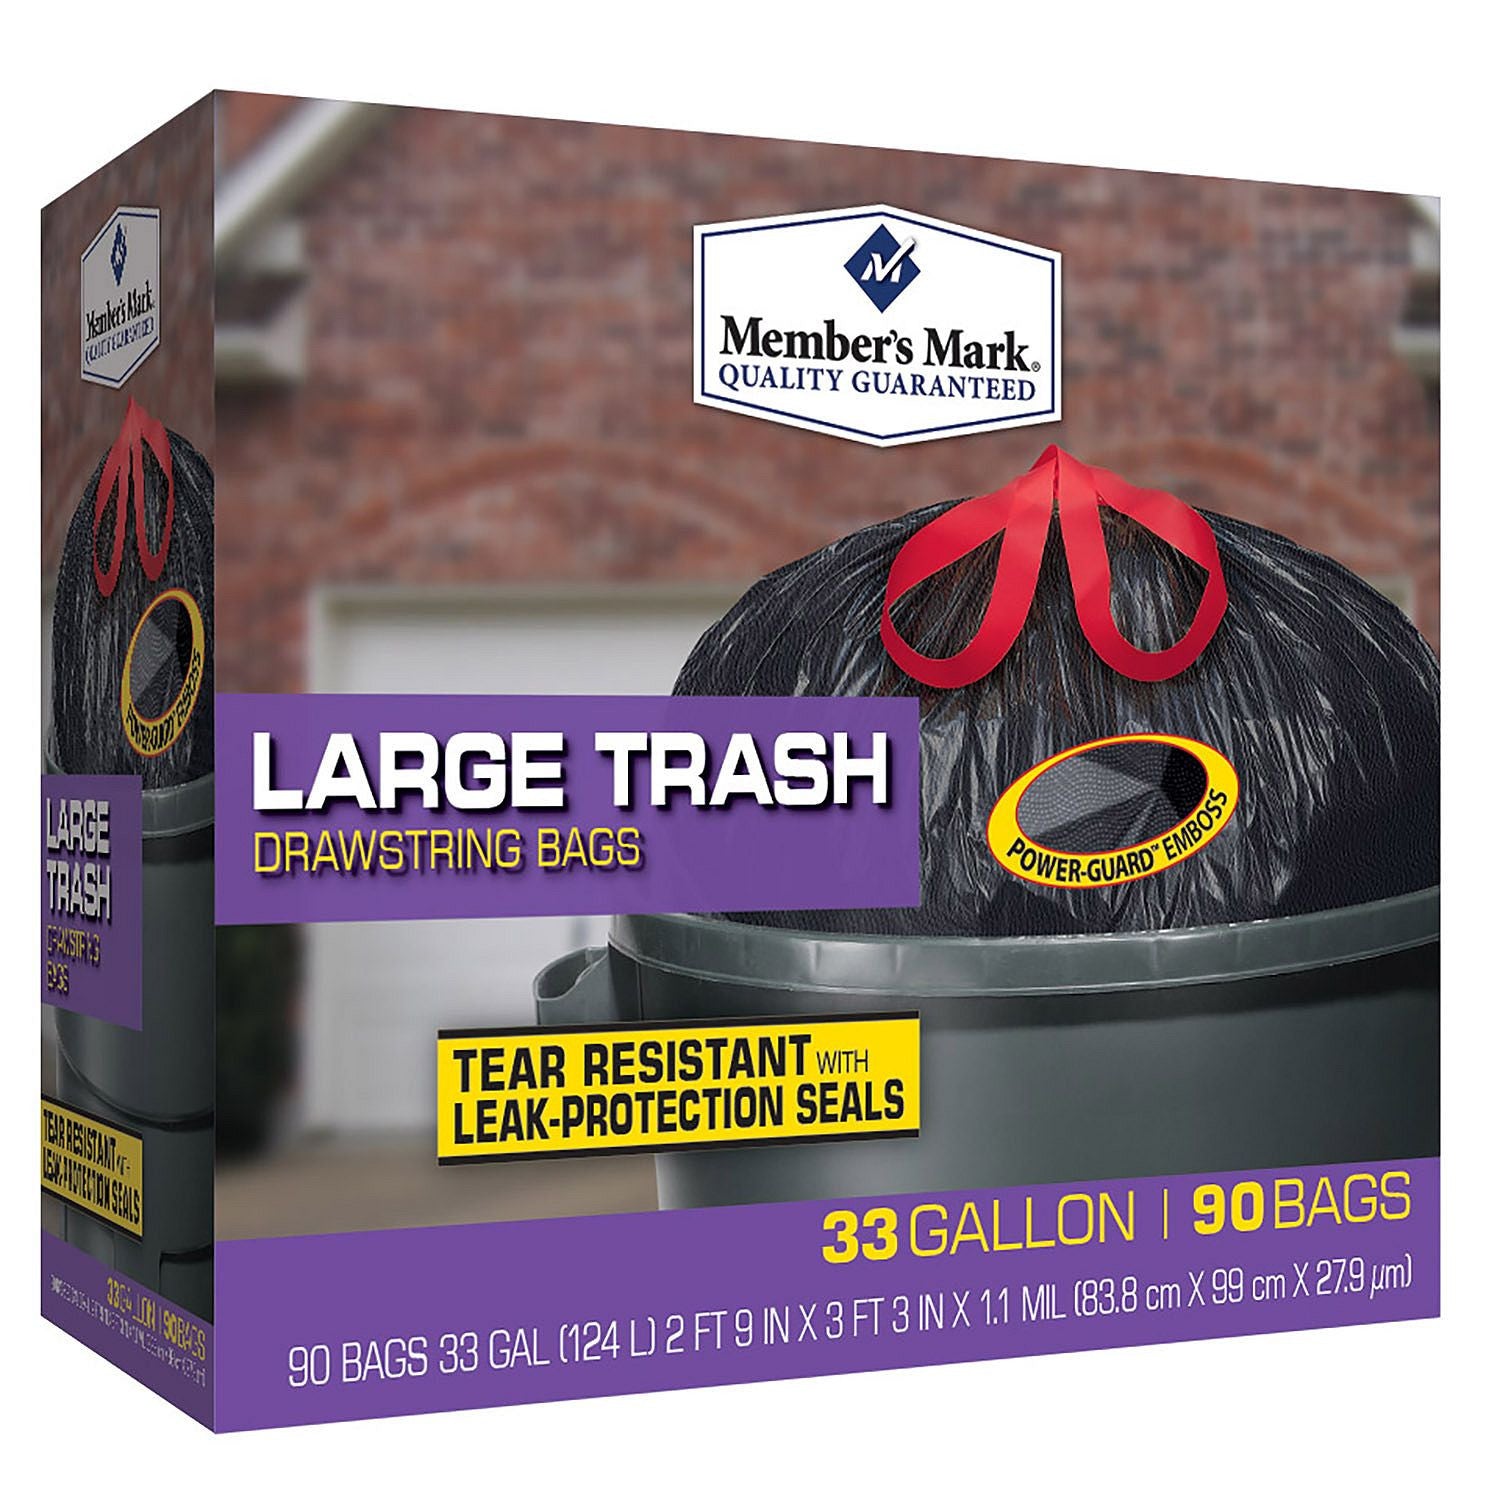 Member's Mark 33-Gallon Power Flex Drawstring Trash Bags (90 ct.) - Sam's  Club